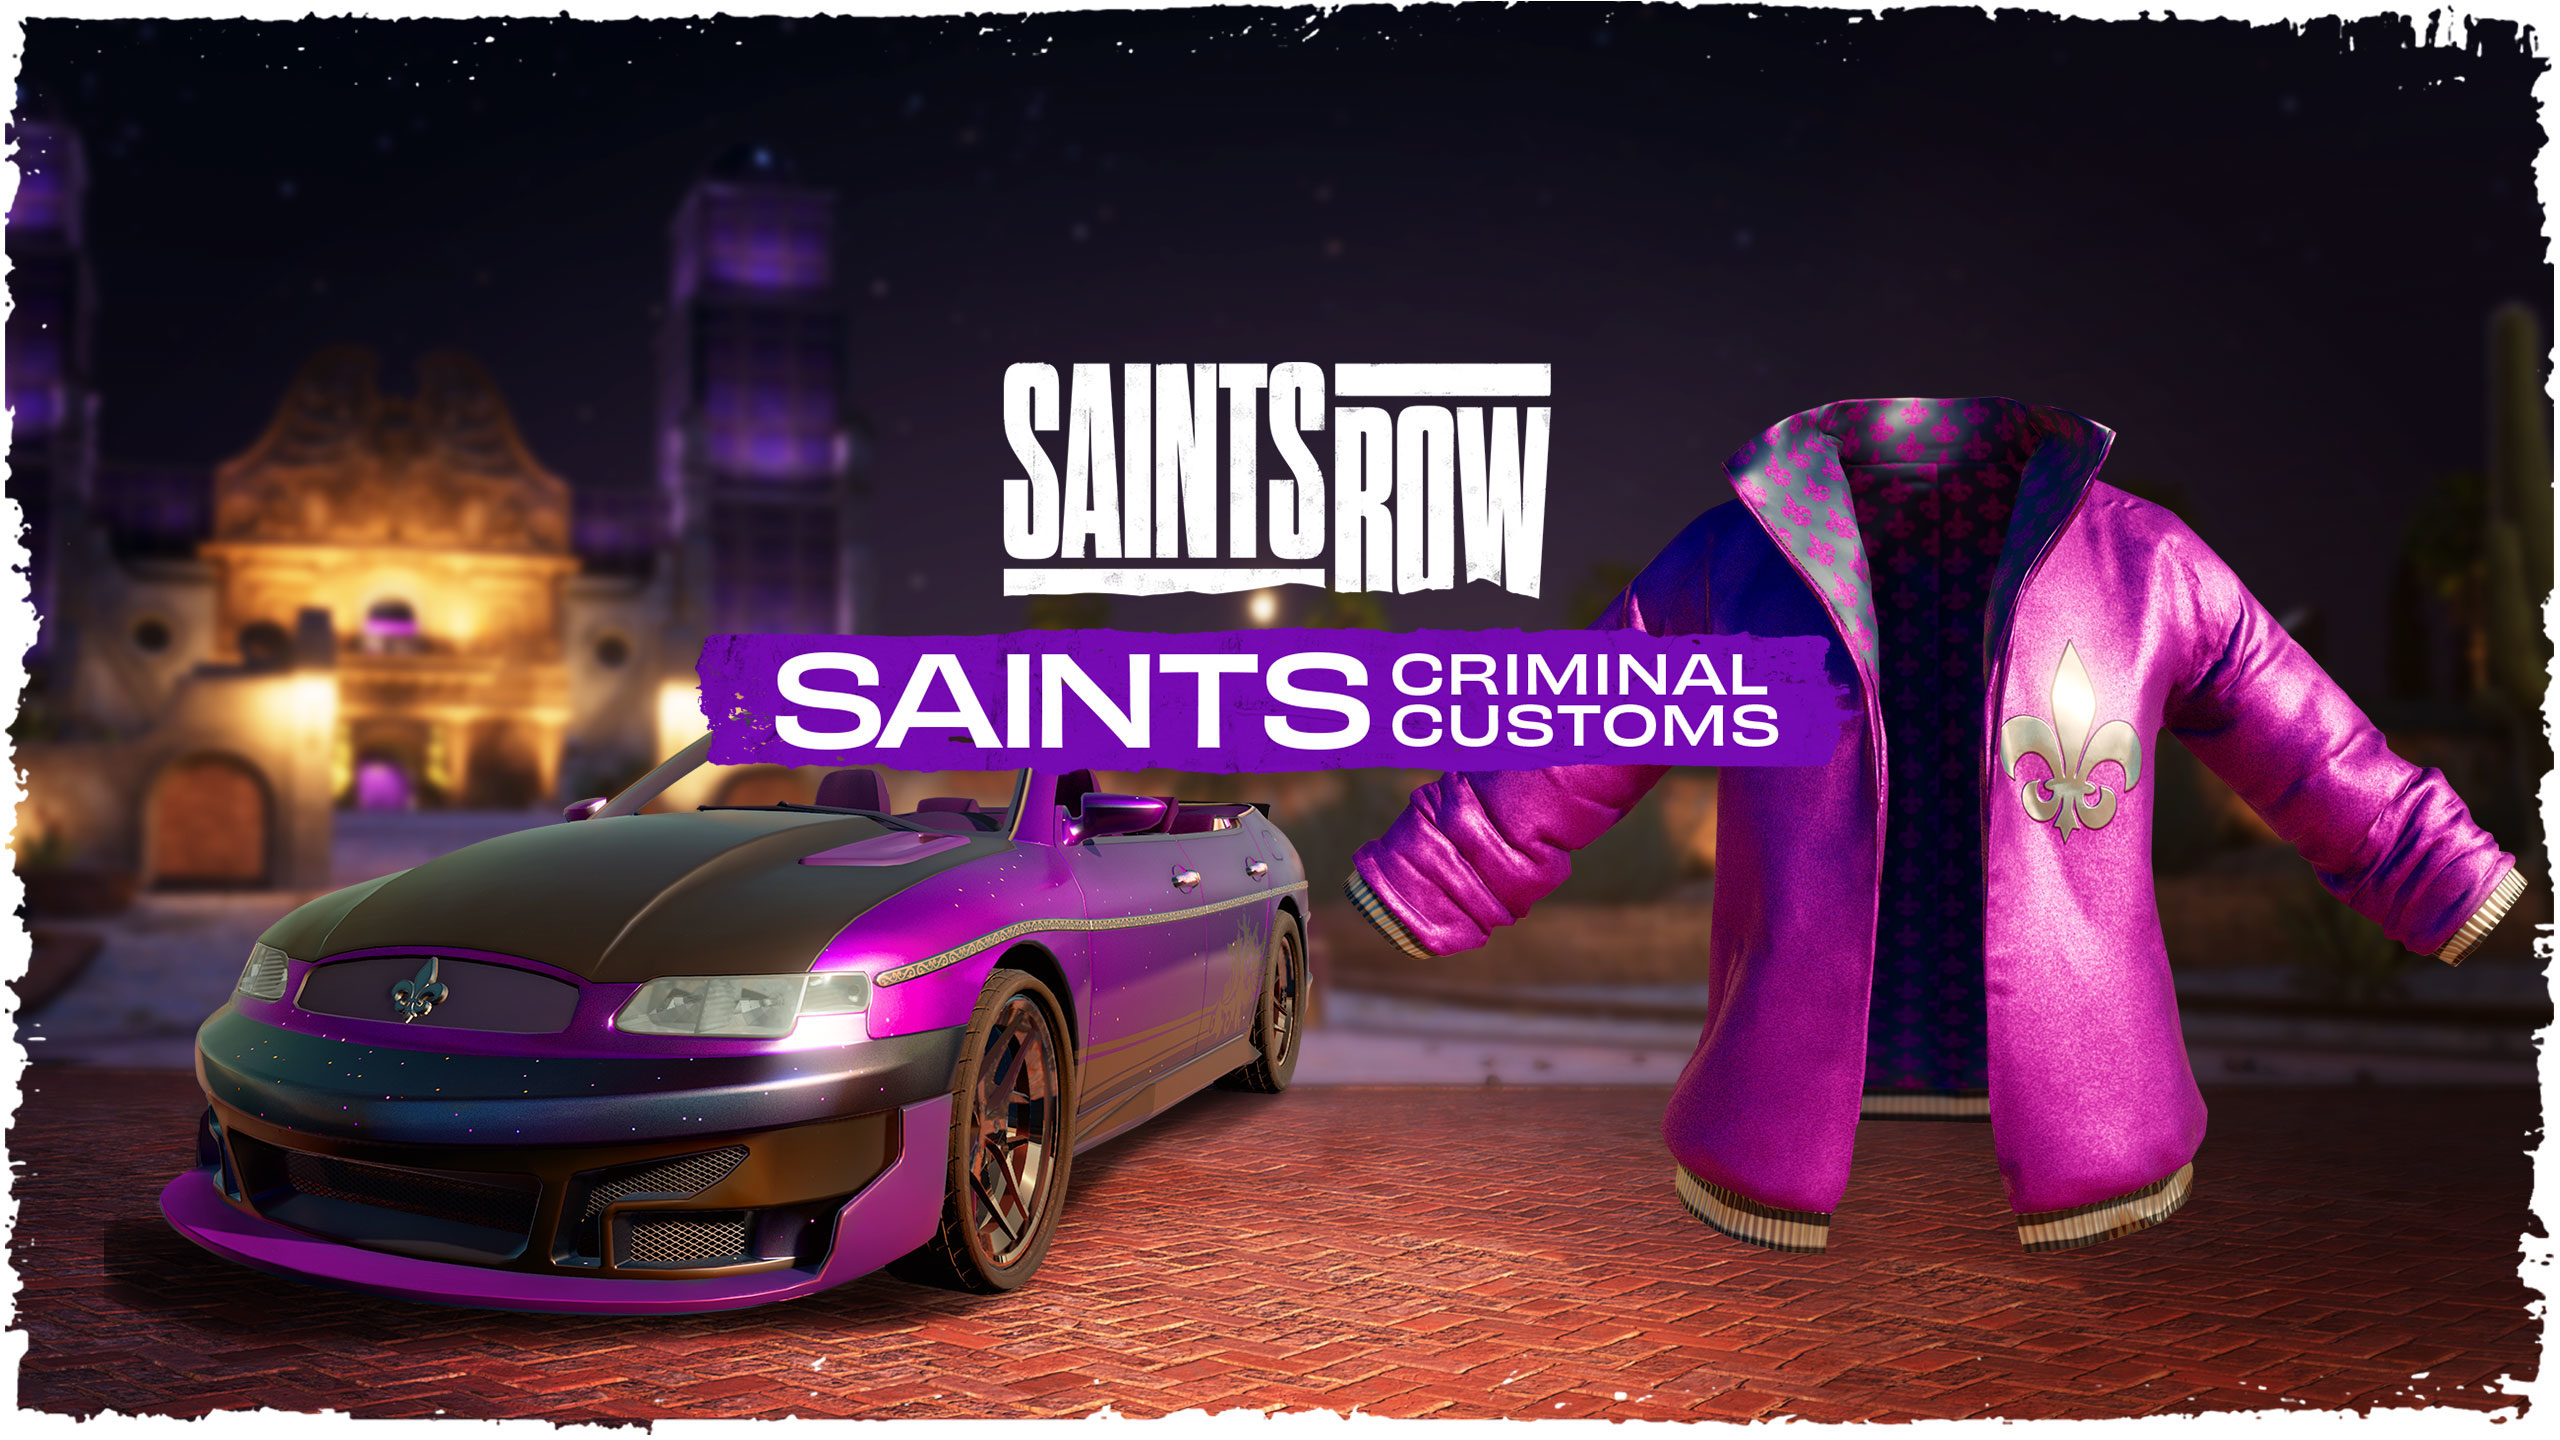 [$ 68.2] Saints Row Saints Criminal Customs Edition Epic Games CD Key